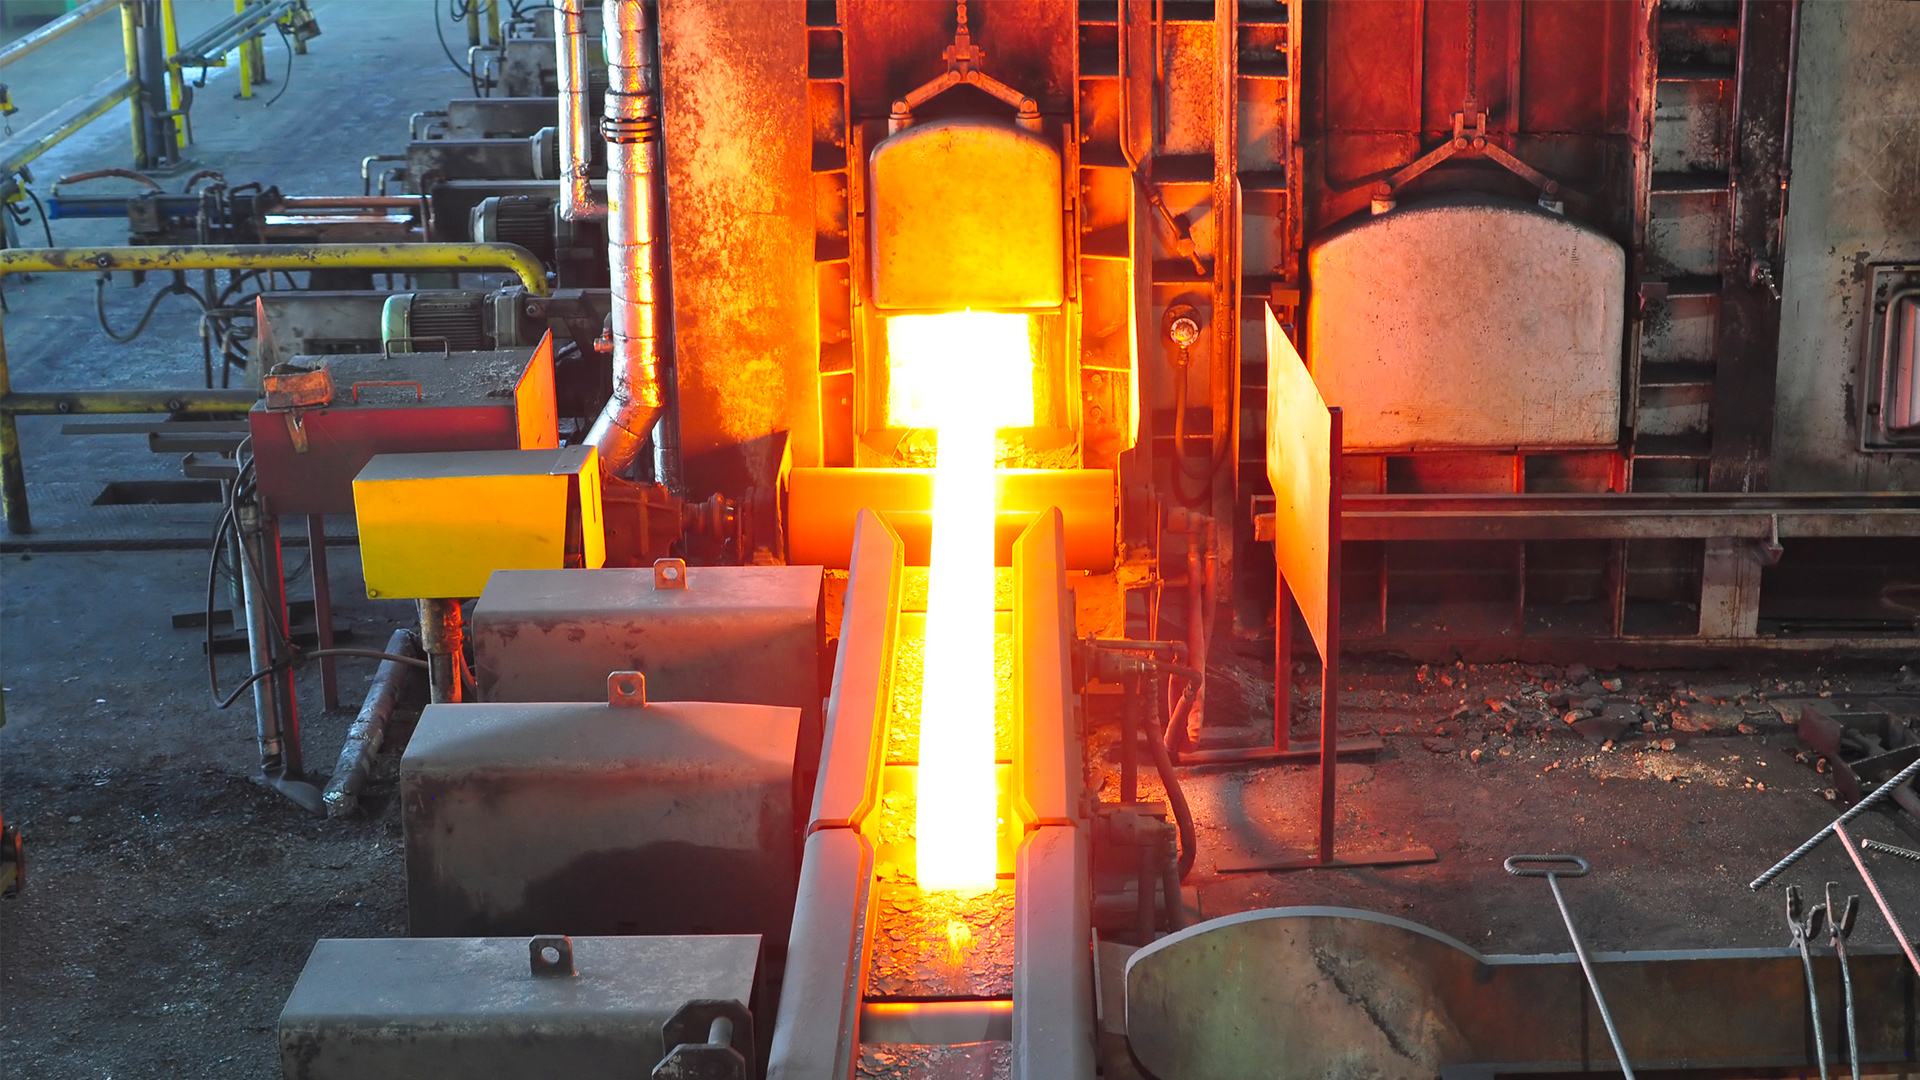 钢铁生产工厂烧结过程的照片。